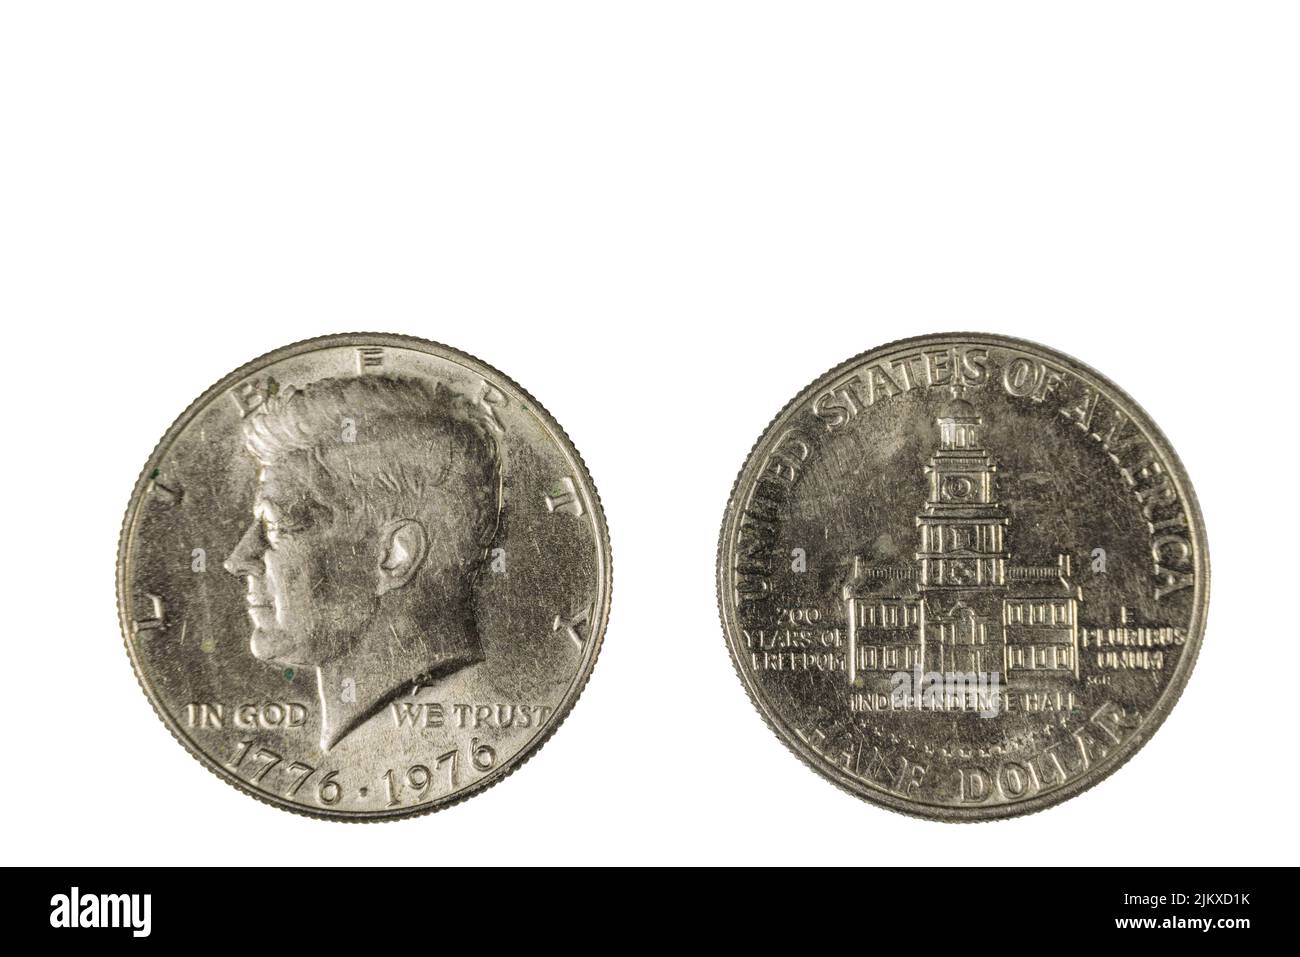 Vue rapprochée de l'avant et de l'arrière d'une pièce de la moitié du dollar américain datée du 1776-1976. Concept numismatique. Banque D'Images